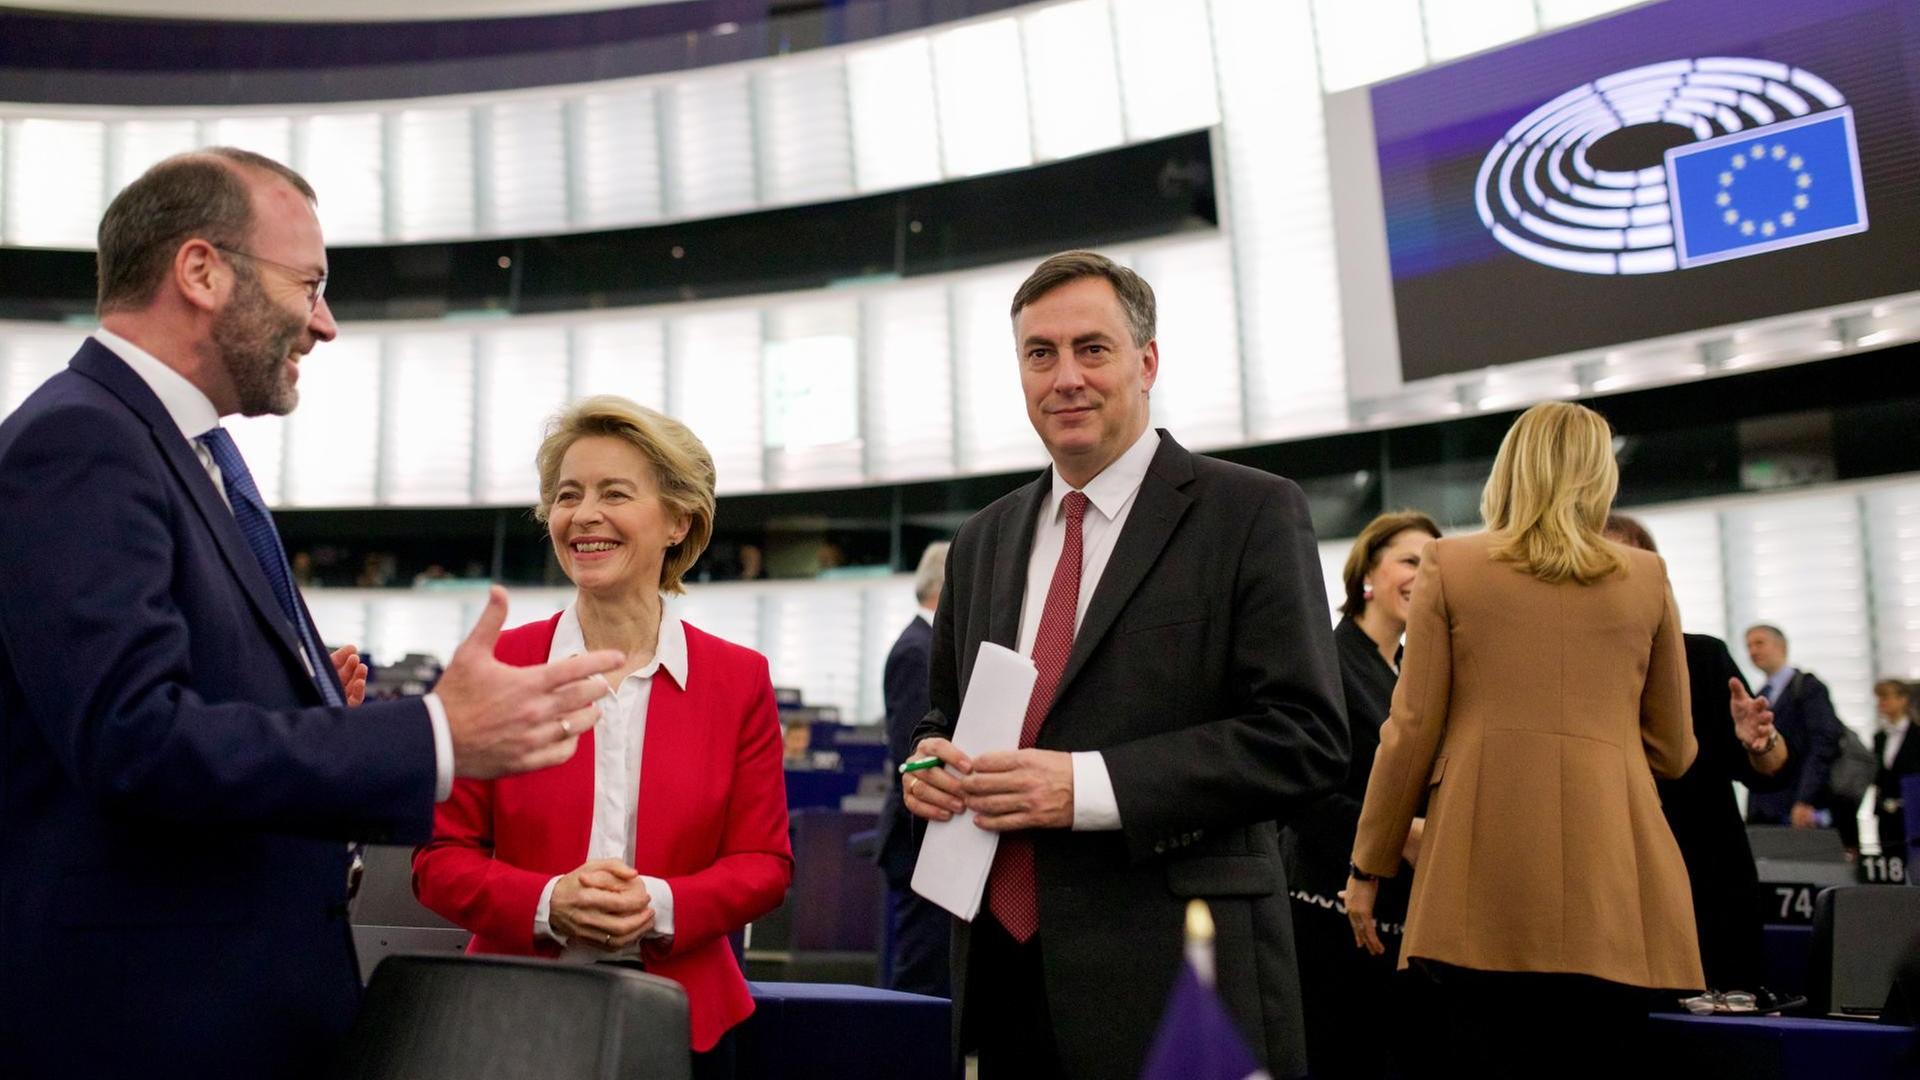 Straßburg: Manfred Weber, Vorsitzender der EVP-Fraktion im Europaparlament, Ursula von der Leyen, Präsidentin der Europäischen Kommission, und David McAllister, Vorsitzender Auswärtiger Ausschuss des Europaparlaments, stehen vor Beginn der Plenarsitzung zusammen.